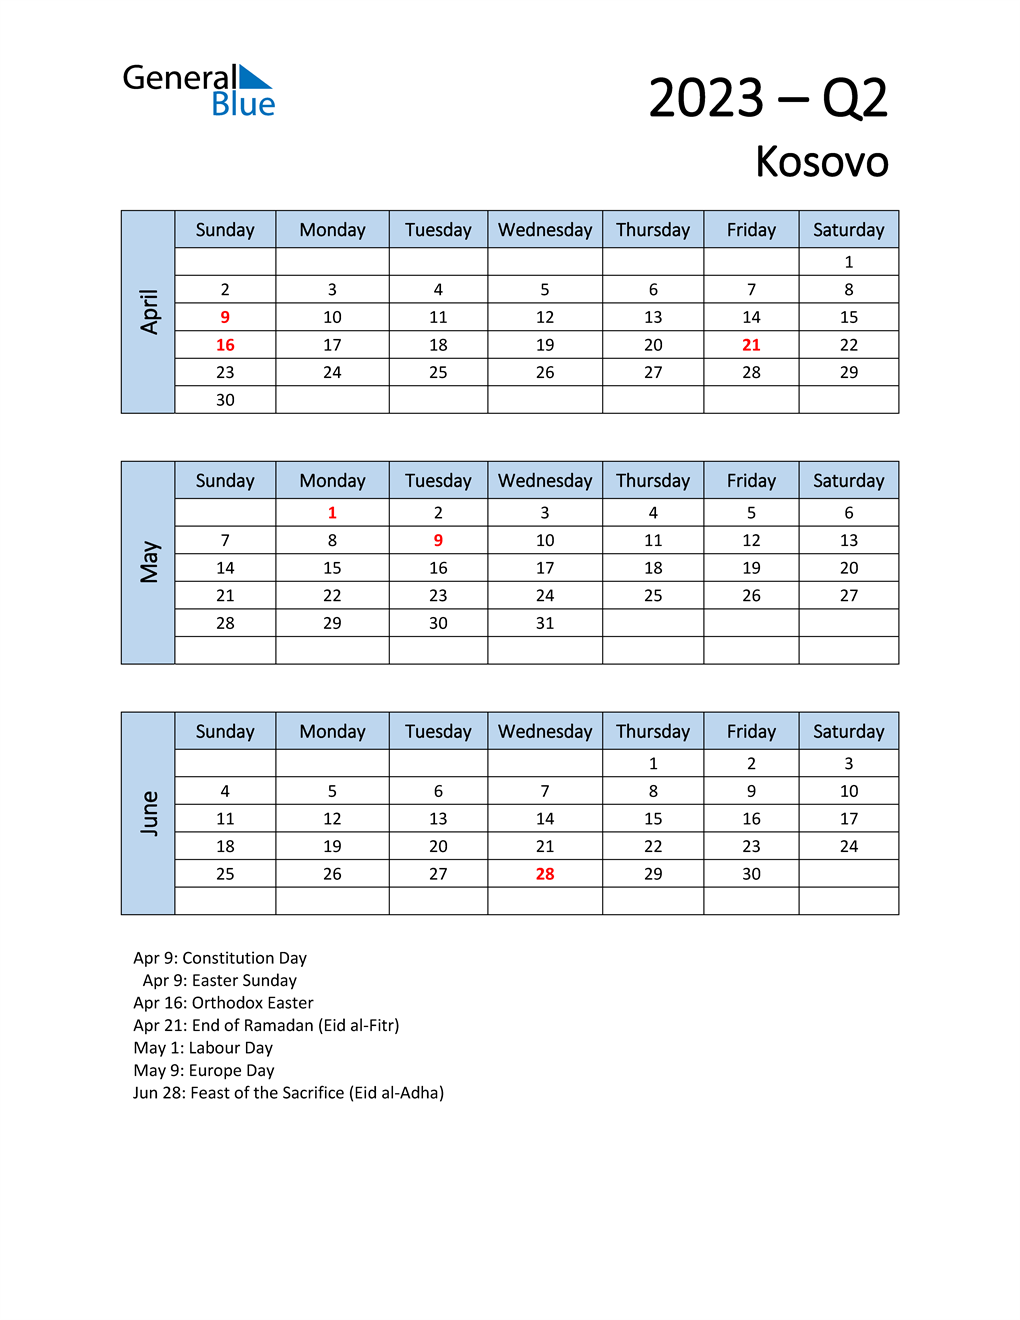  Free Q2 2023 Calendar for Kosovo